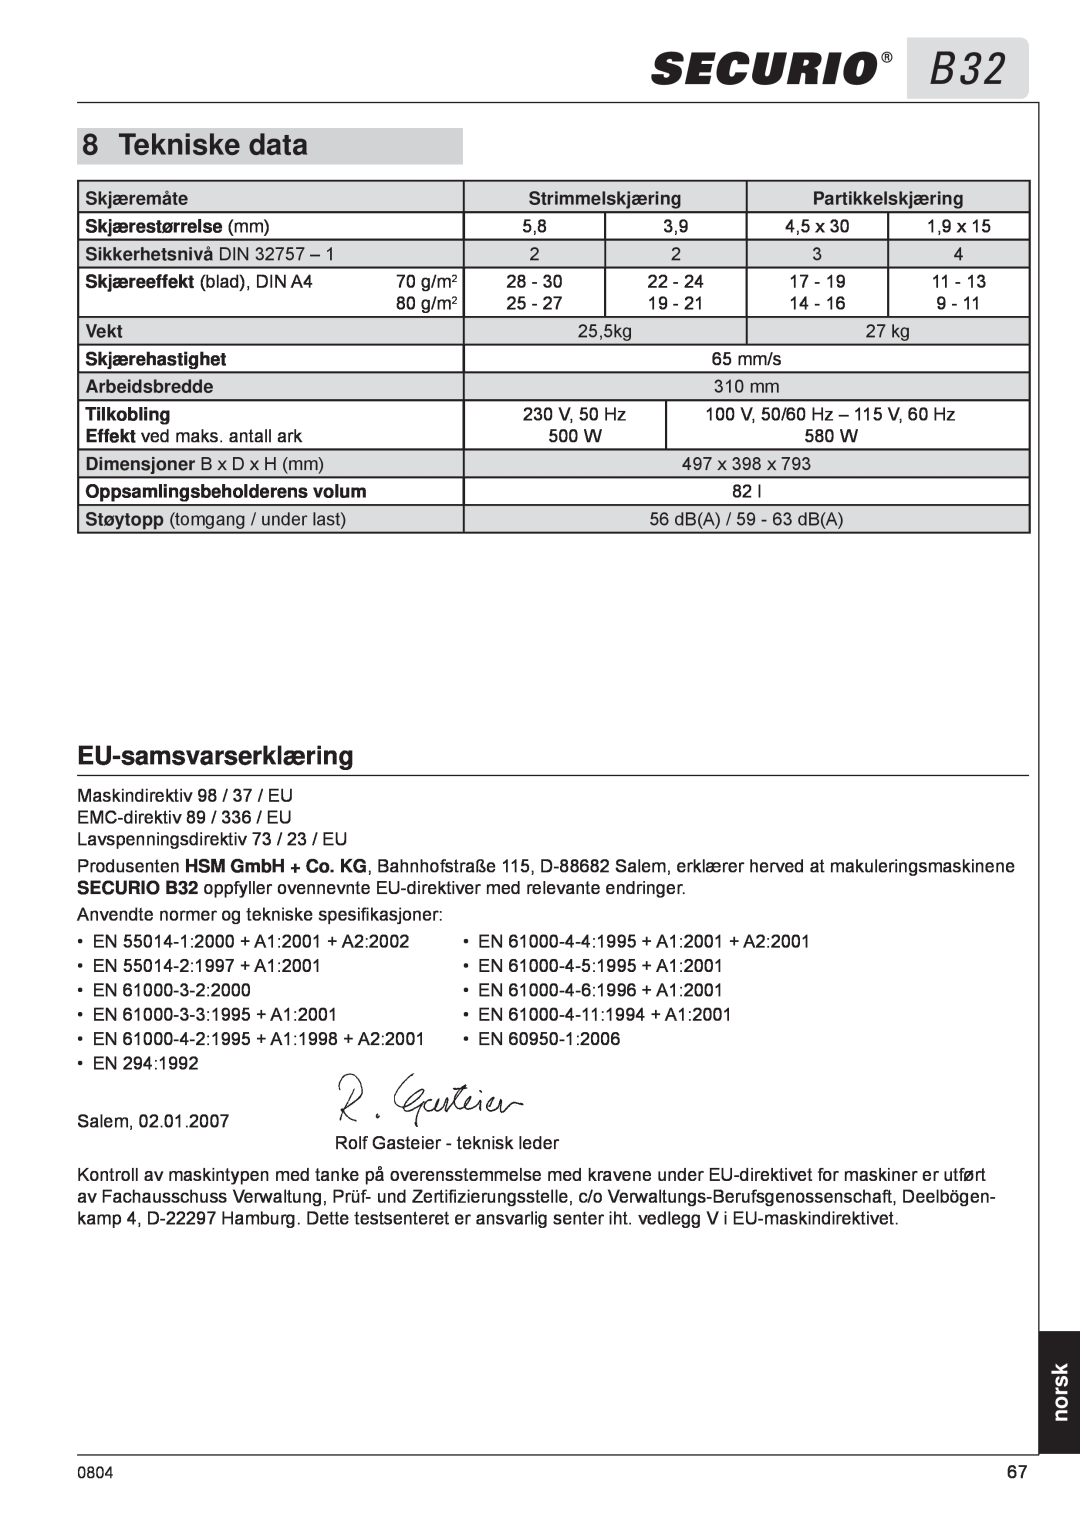 HSM B32 manual EU-samsvarserklæring, Tekniske data, norsk 